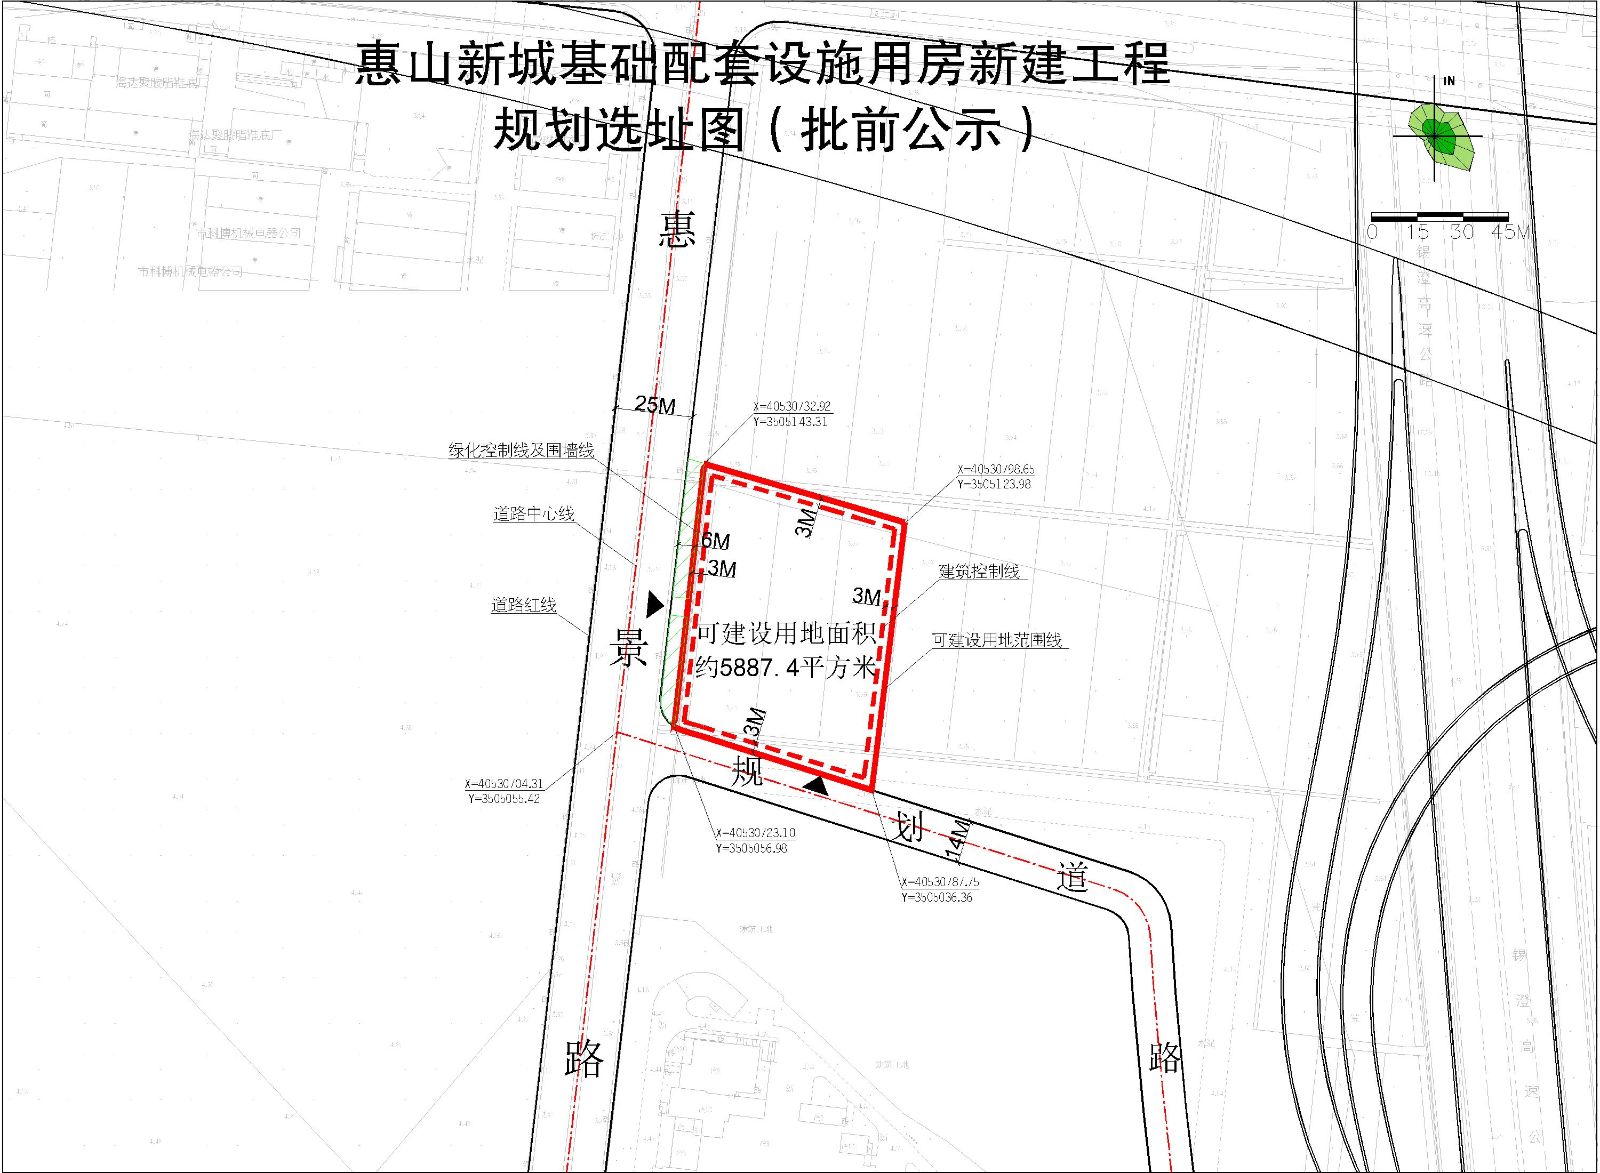 惠山新城基础配套设施用房新建工程选址意见书批前公示